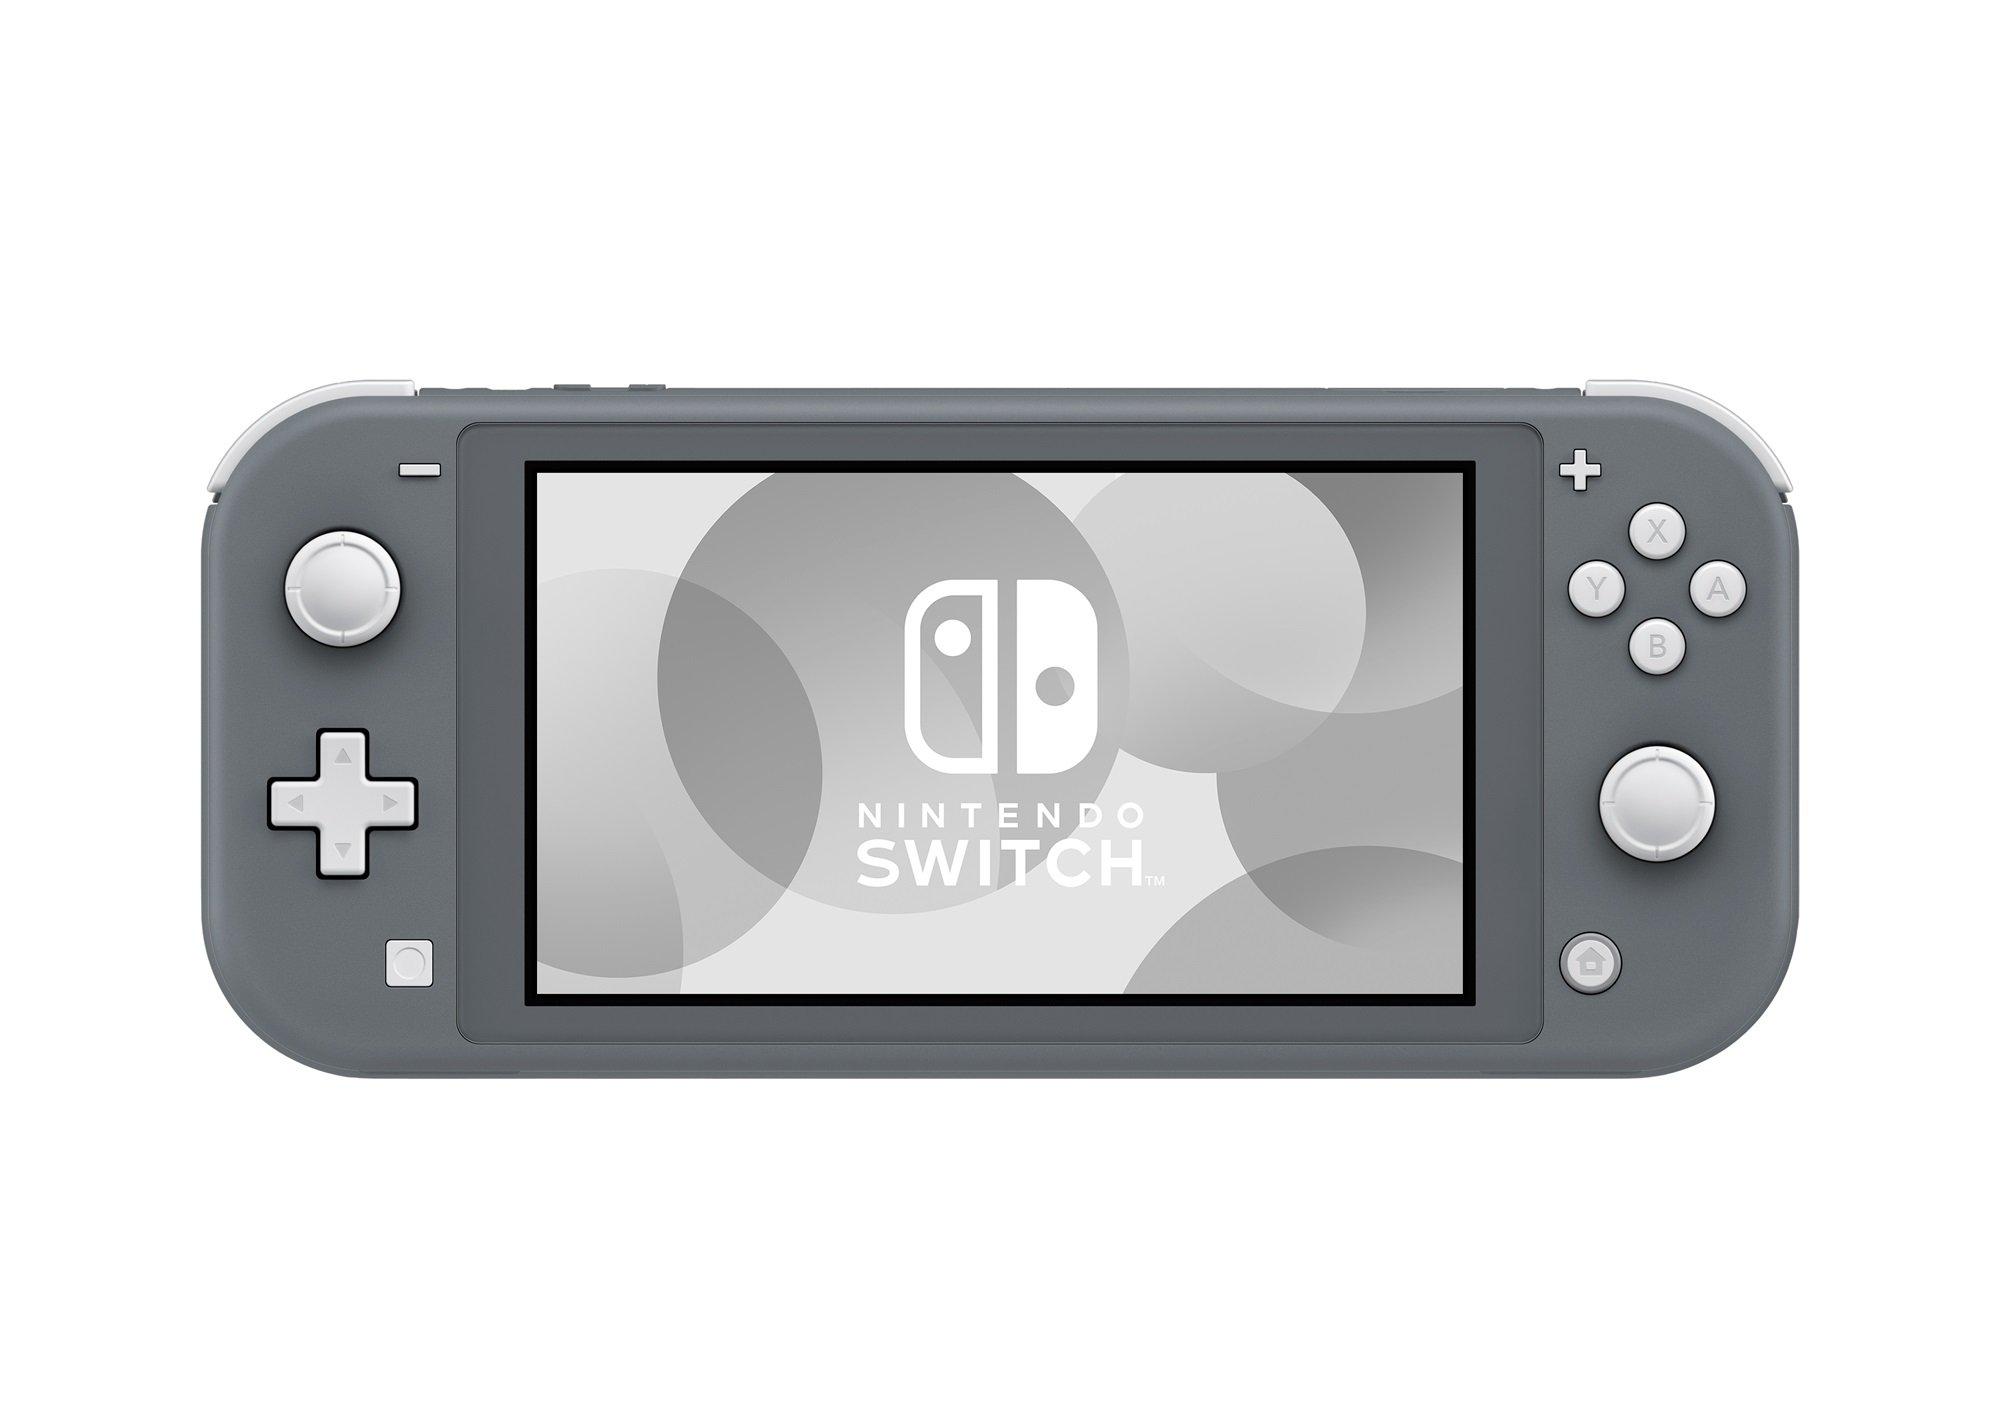 Nintendo Switch NINTENDO SWITCH LITE グ… www.sudouestprimeurs.fr